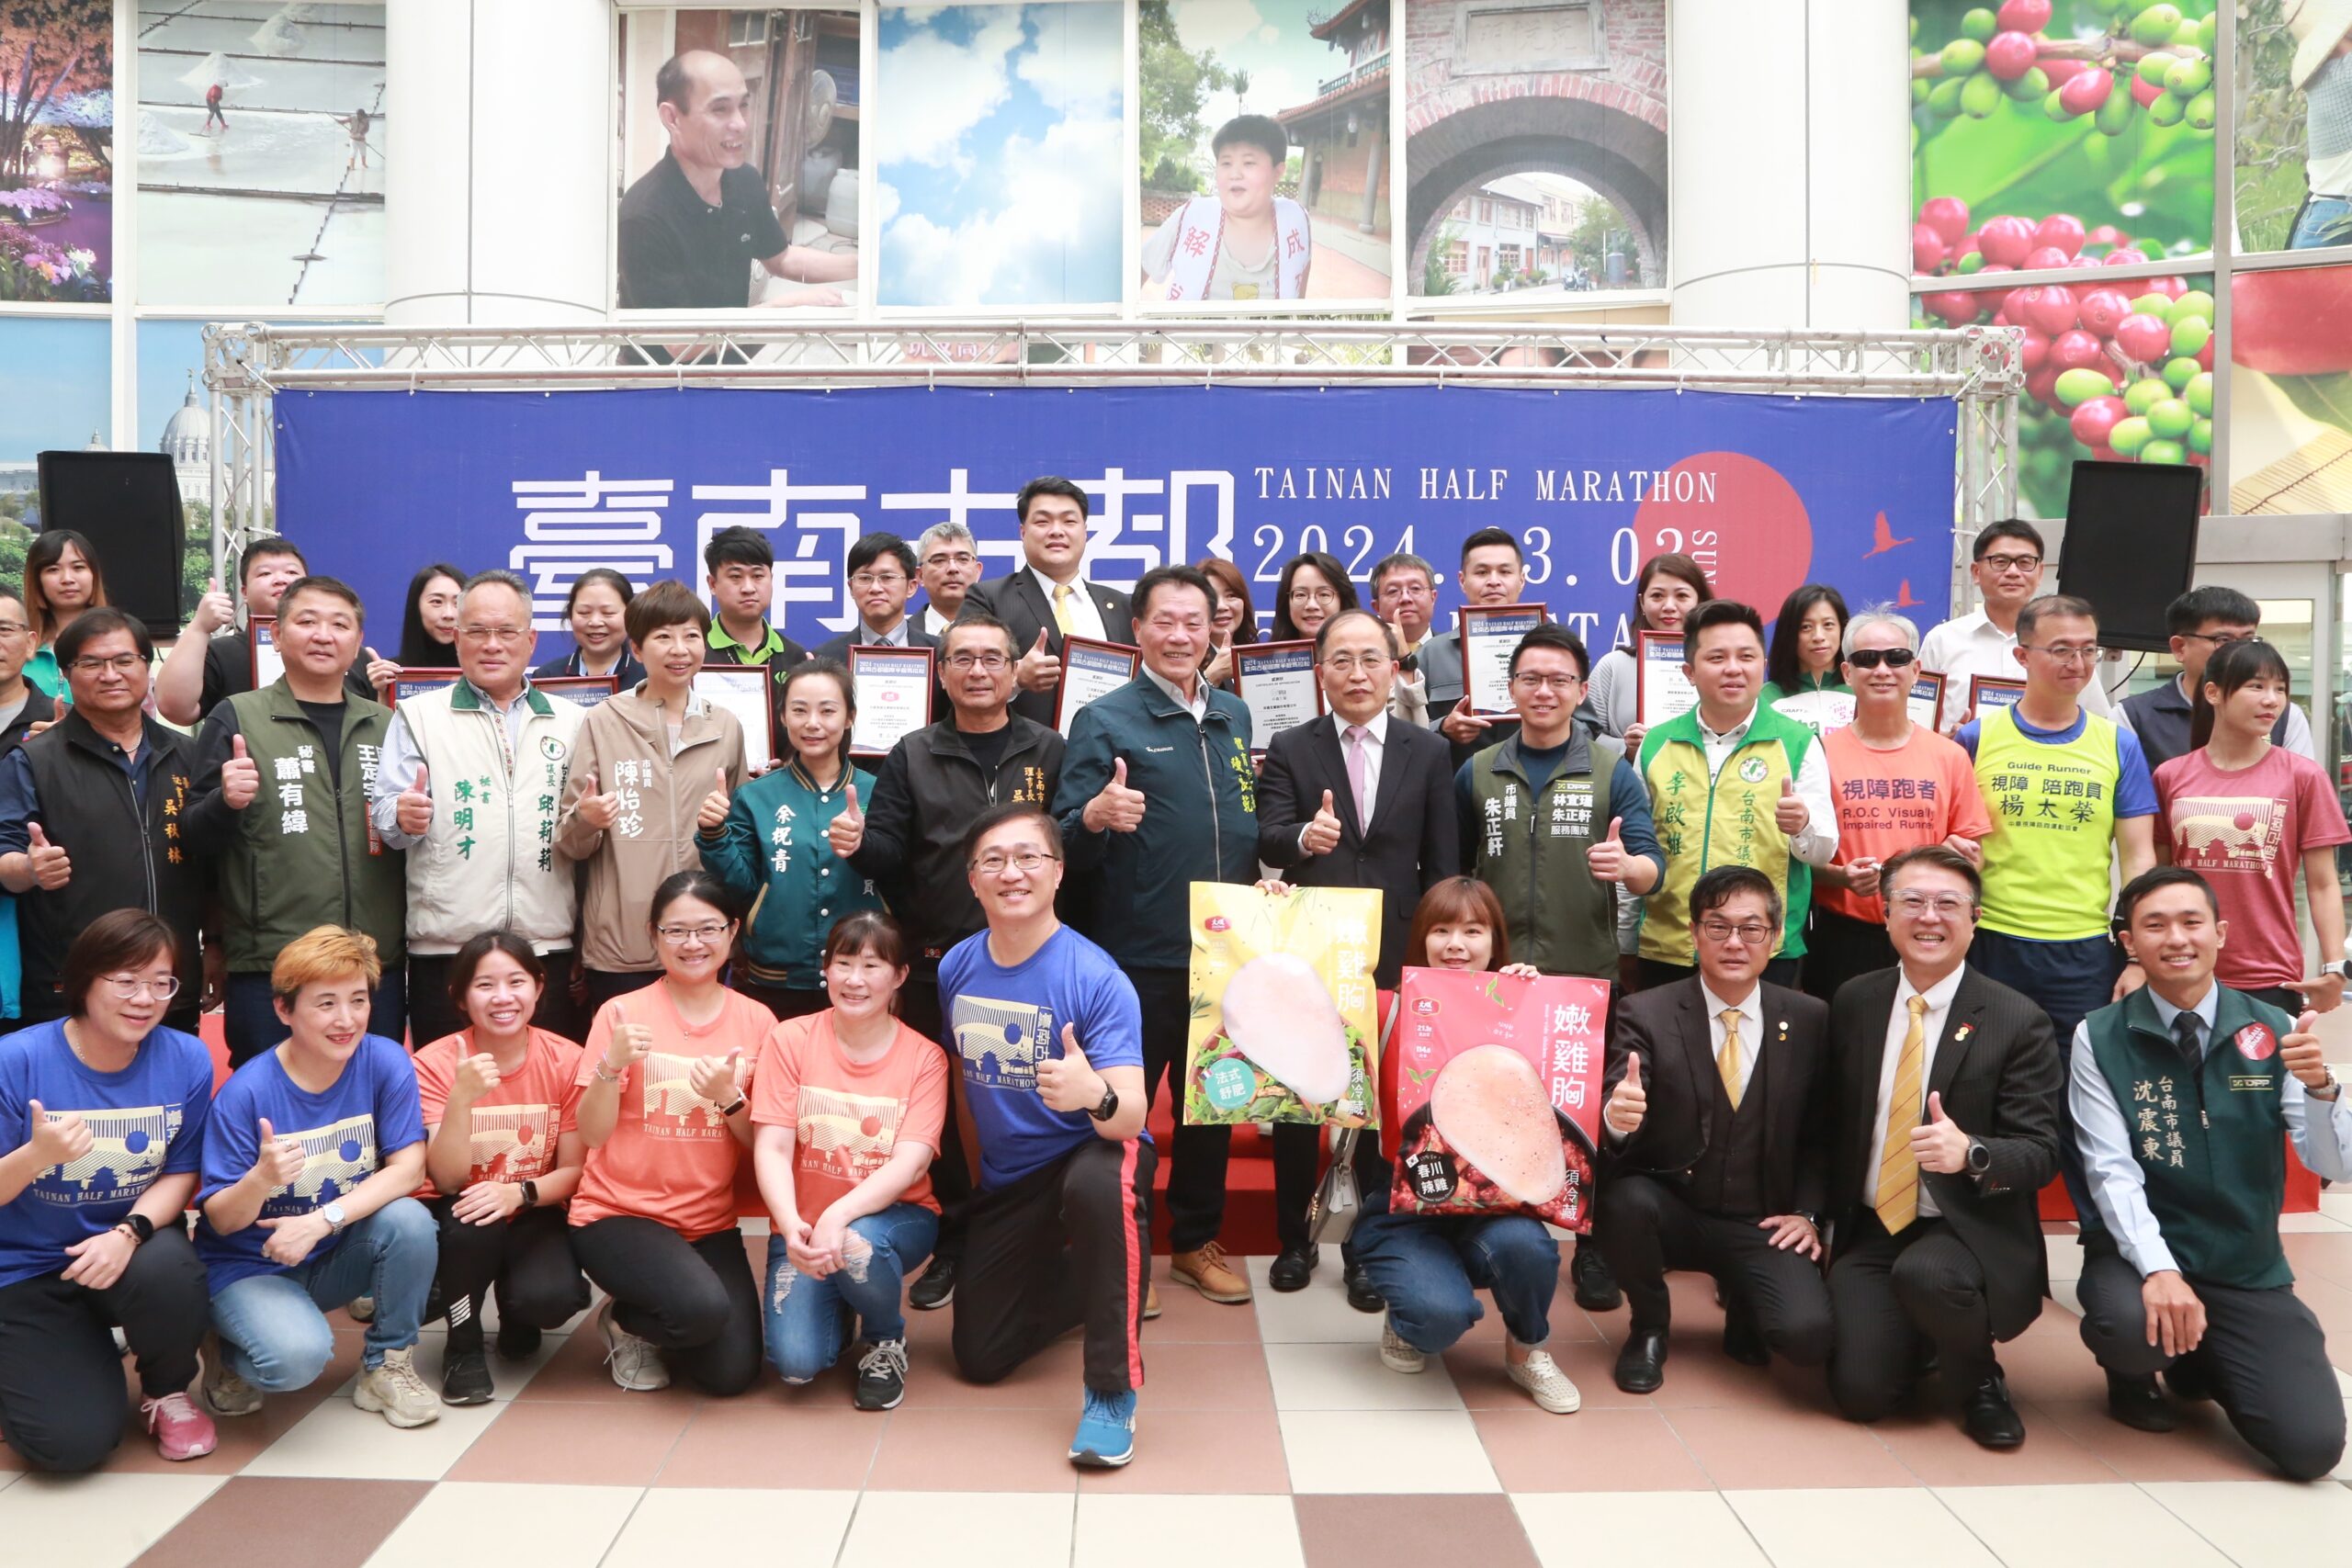 臺南古都國際半程馬拉松3/3熱血開跑 黃偉哲樂邀享受賽事還可逛蘭展、燈會